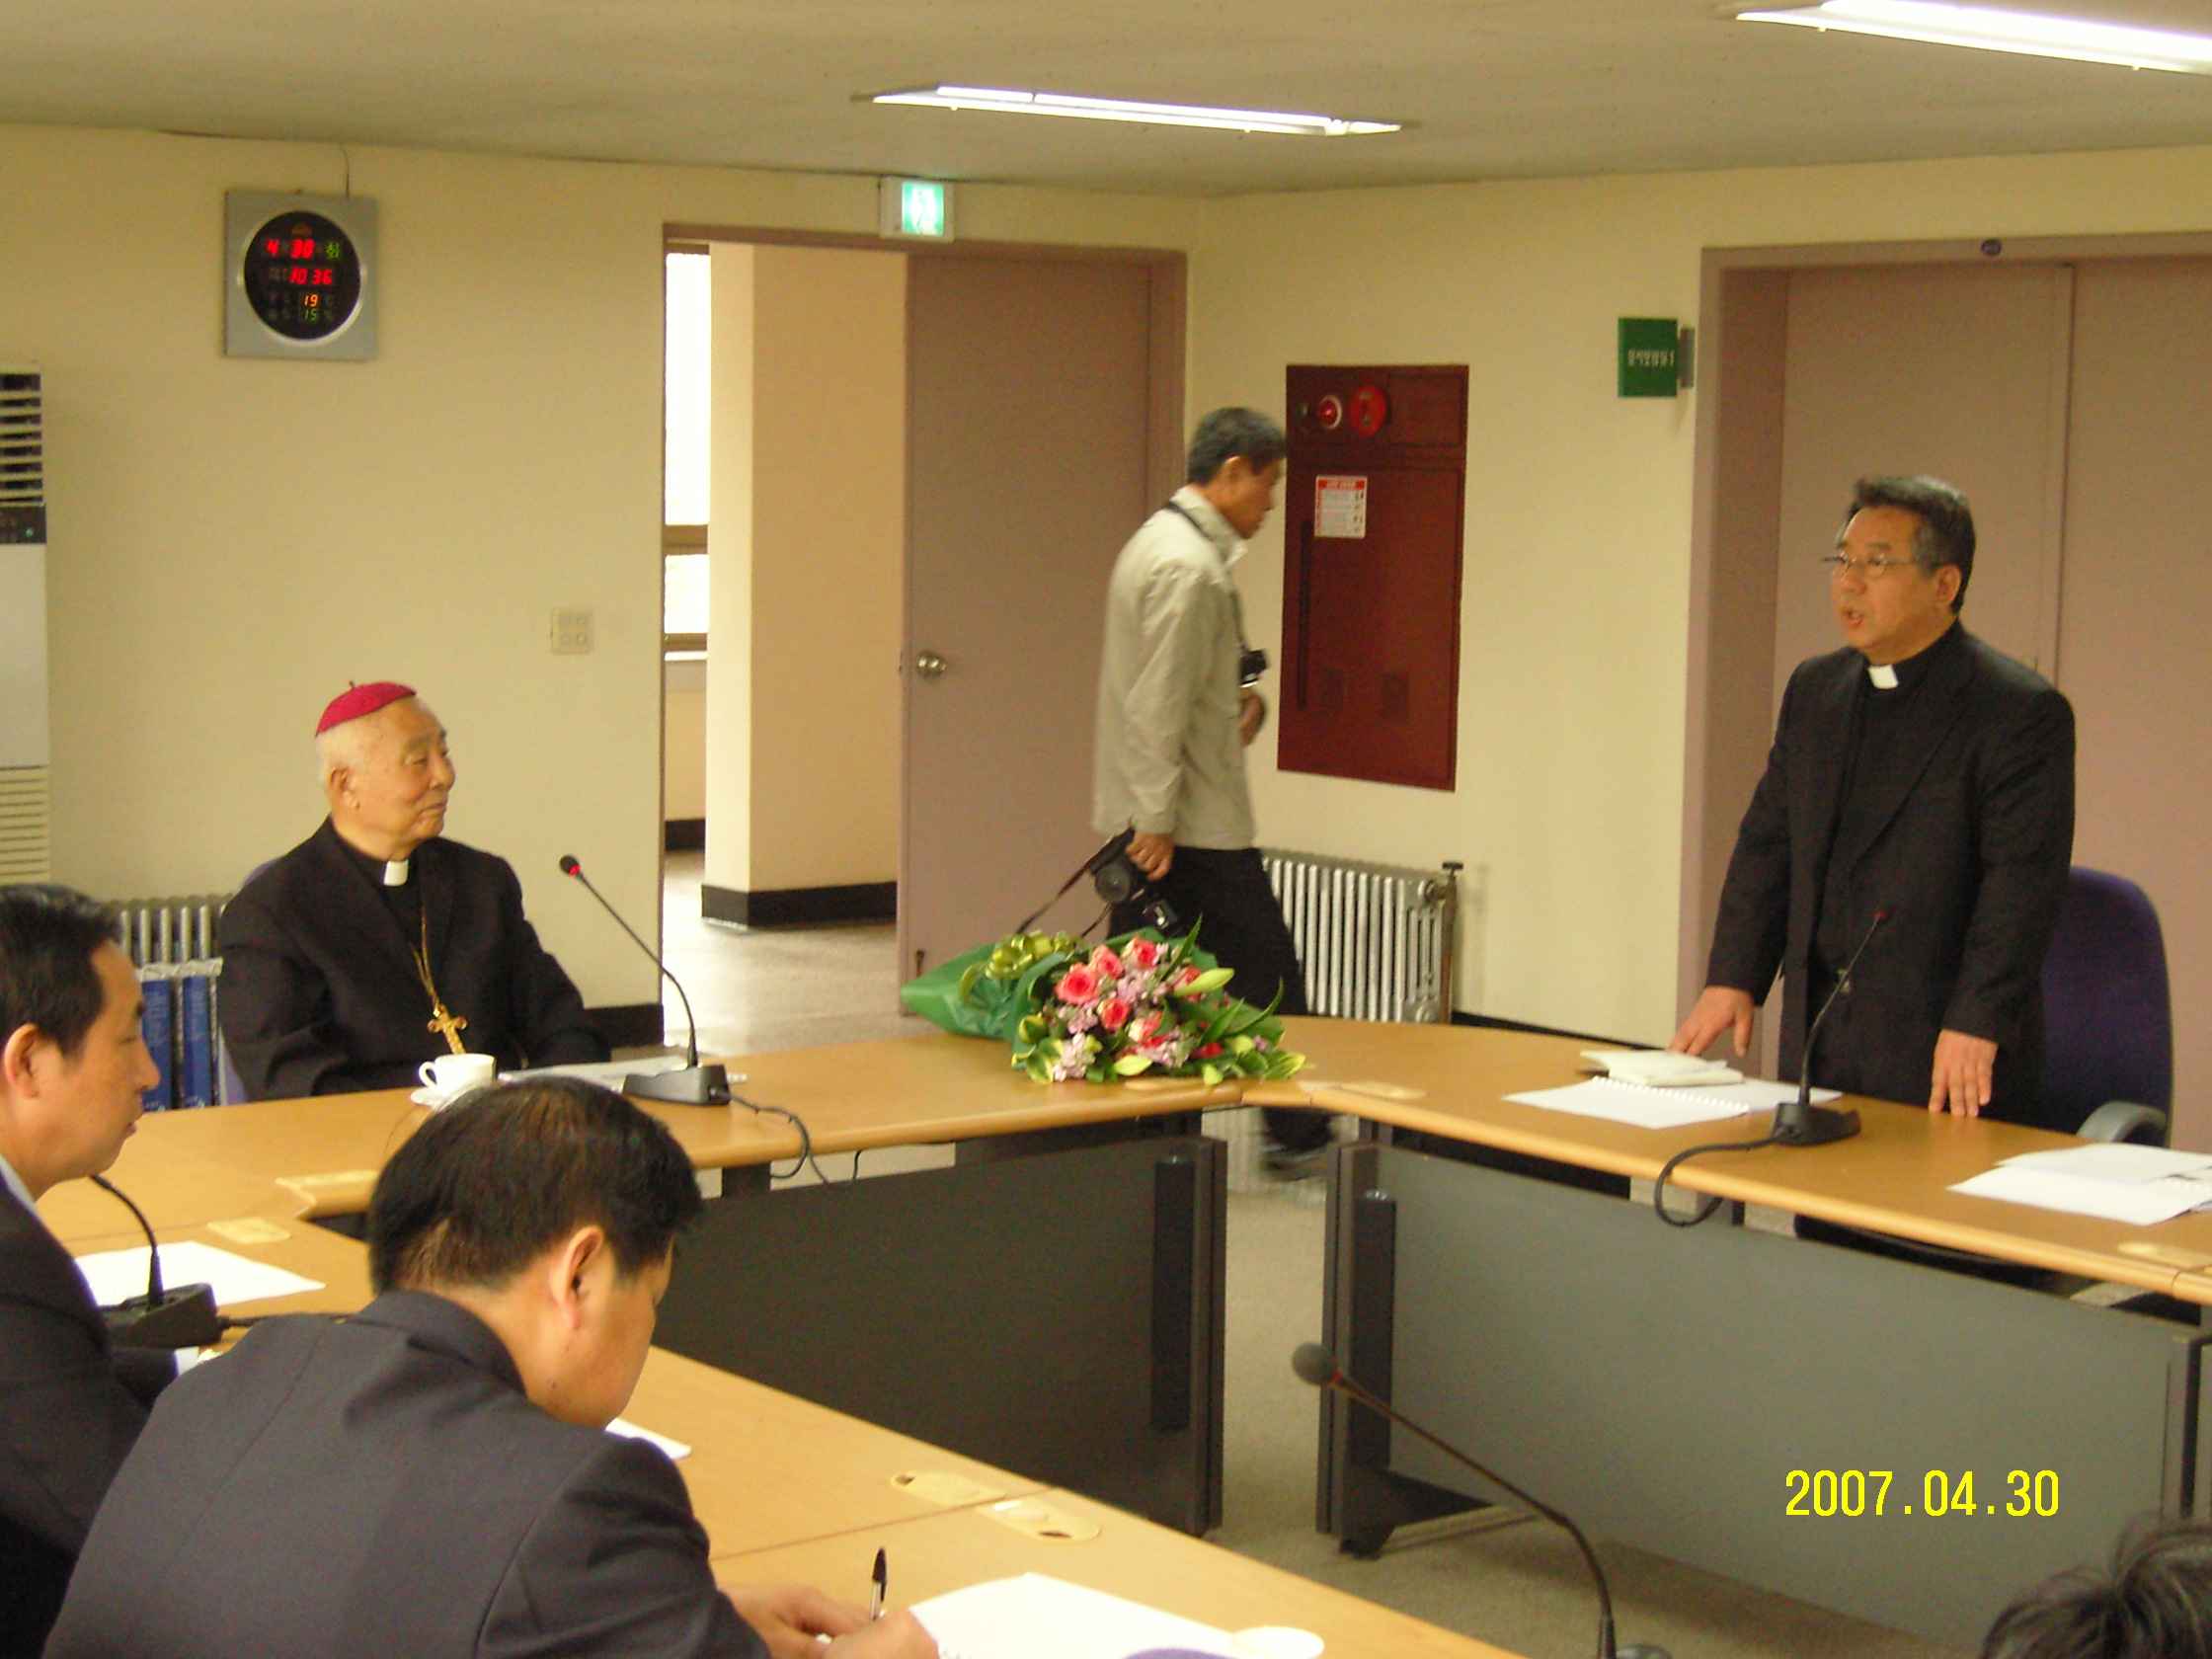 중국 태원교구 사제단 방문(2007.4.30)의 관련된 이미지 입니다.